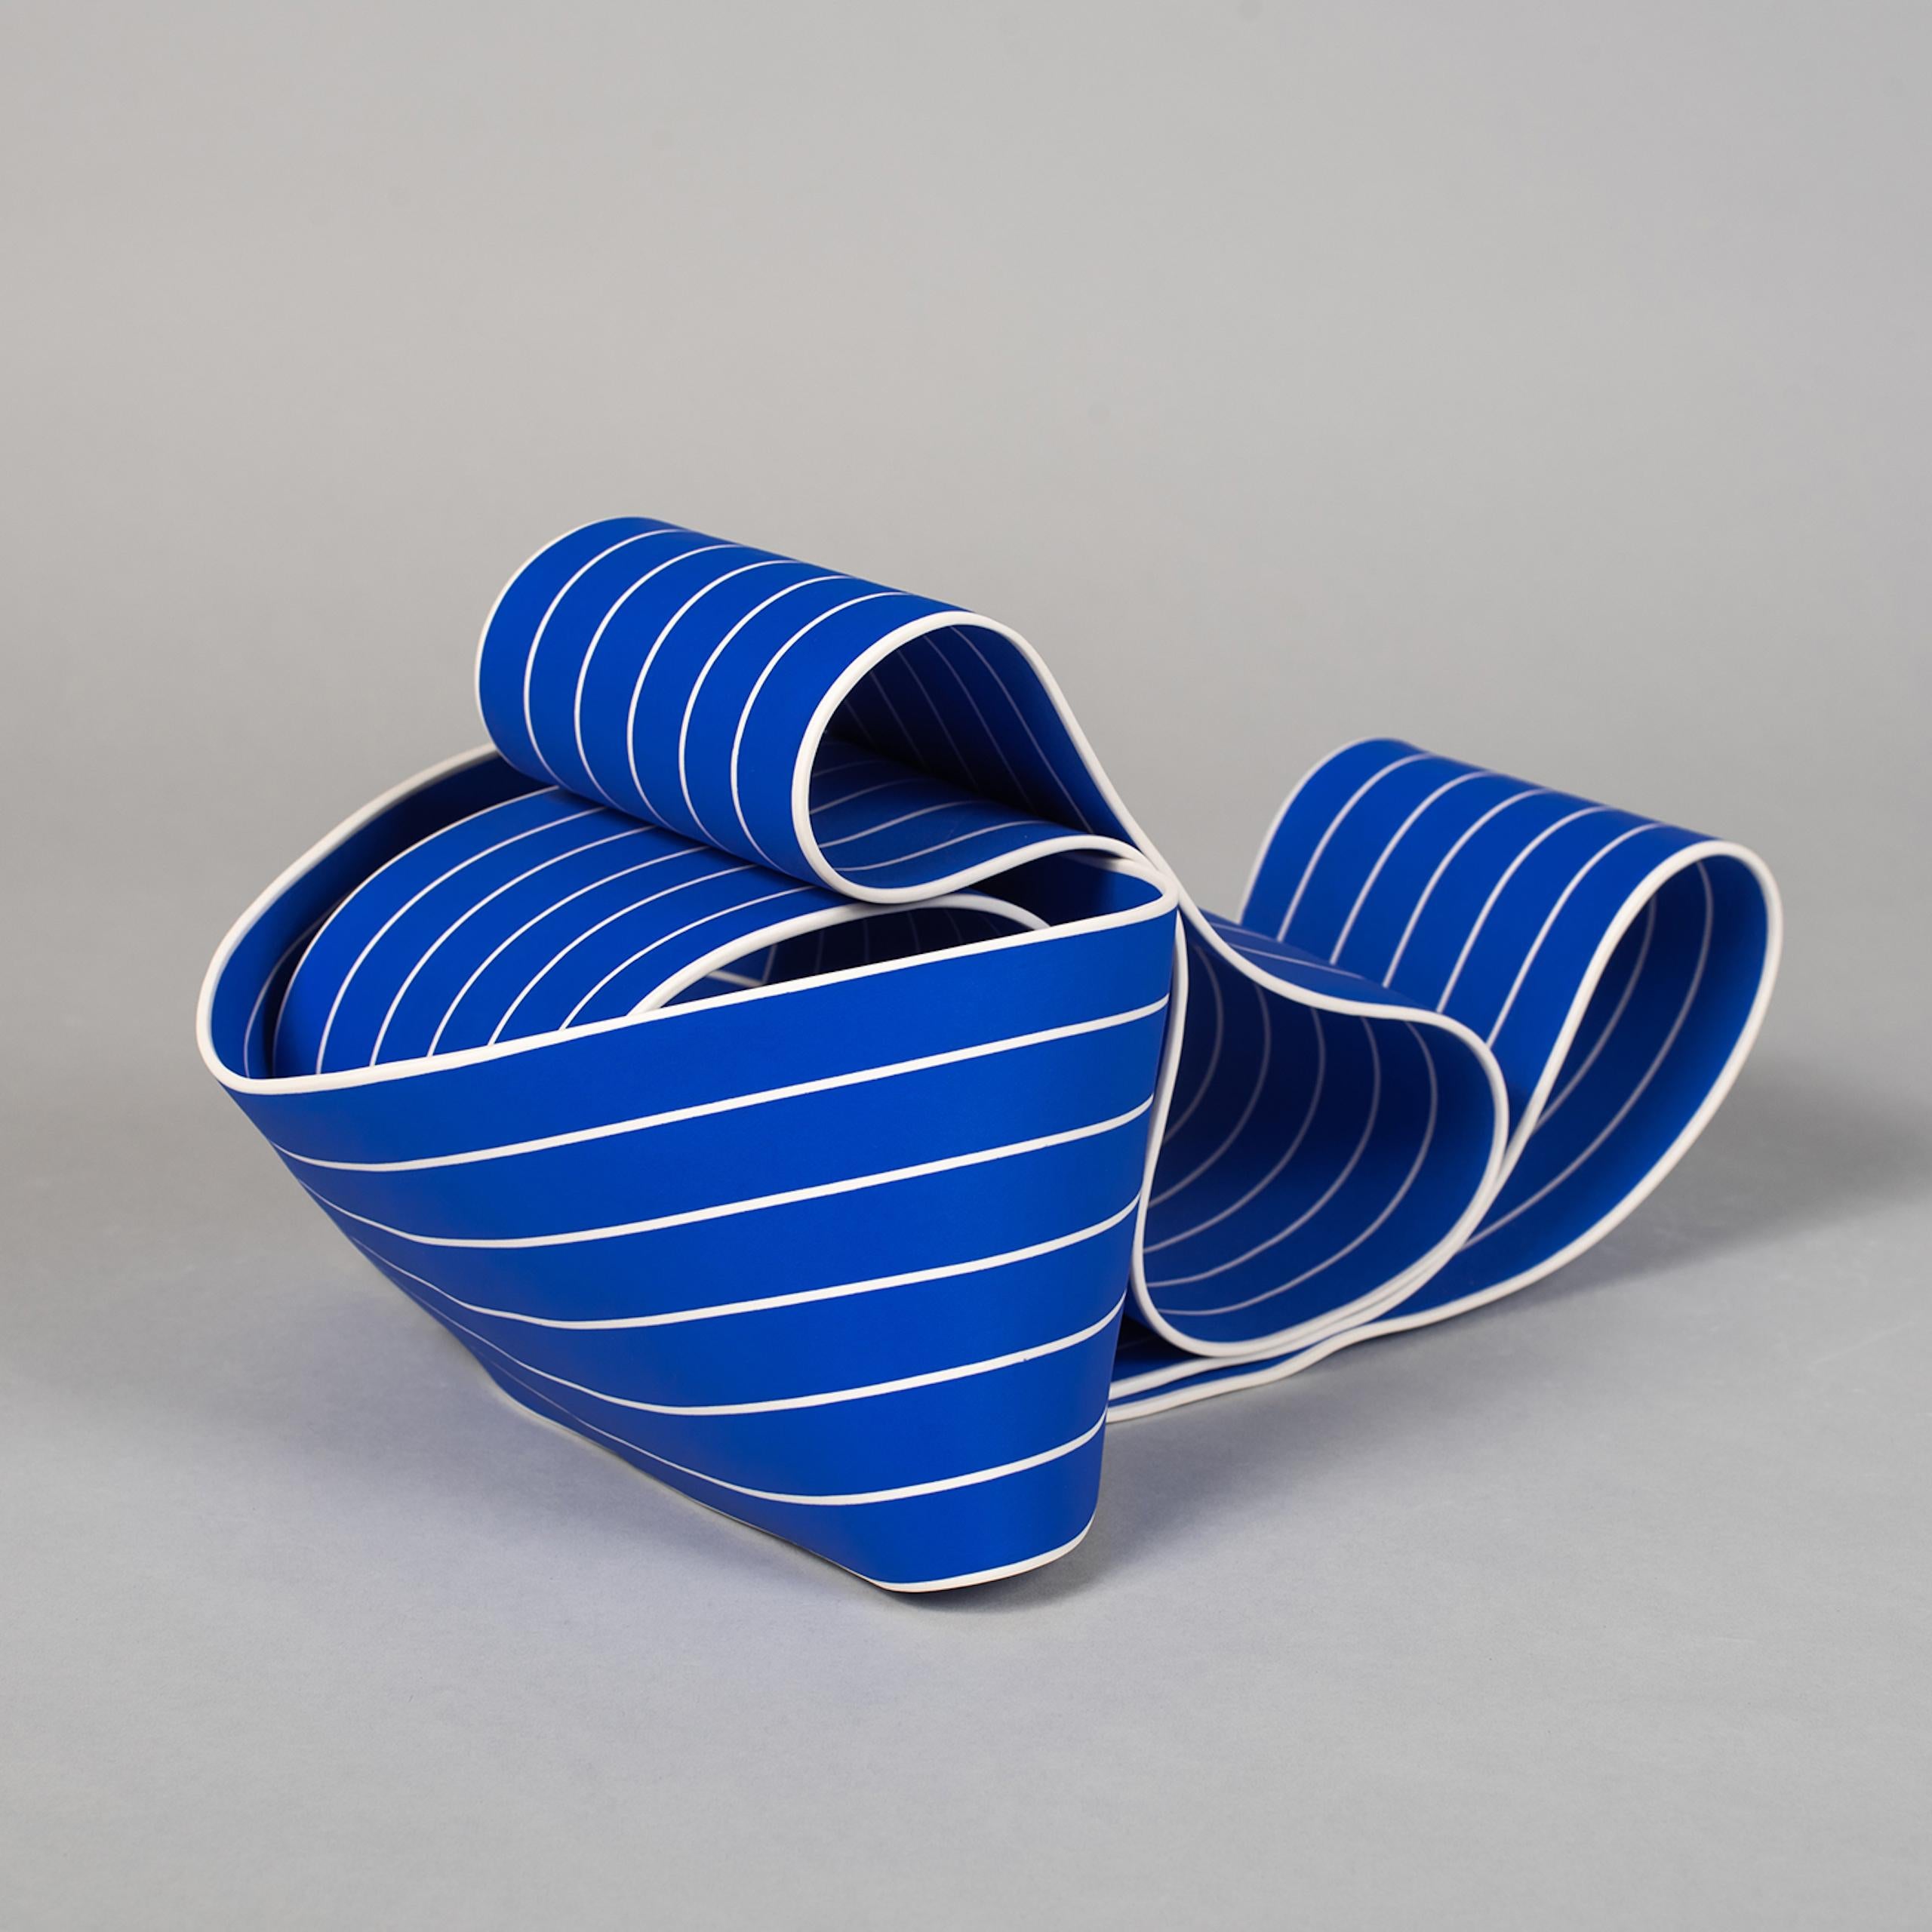 Entrapped 1 by Simcha Even-Chen - Porcelain sculpture, blue lines, movement For Sale 3